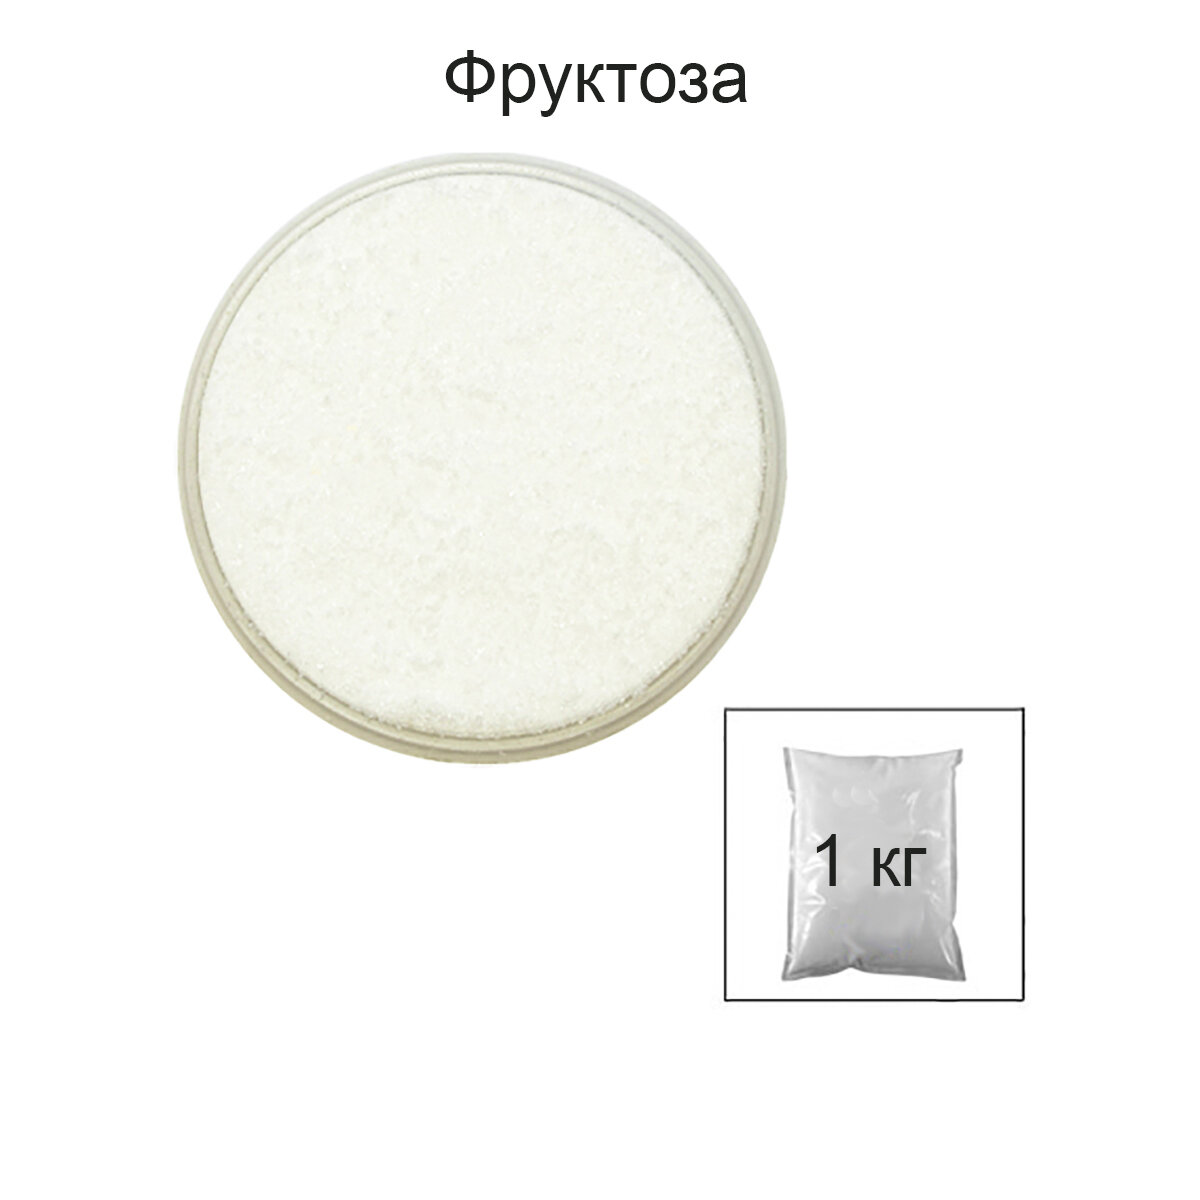 Фруктоза кристаллическая 1 кг